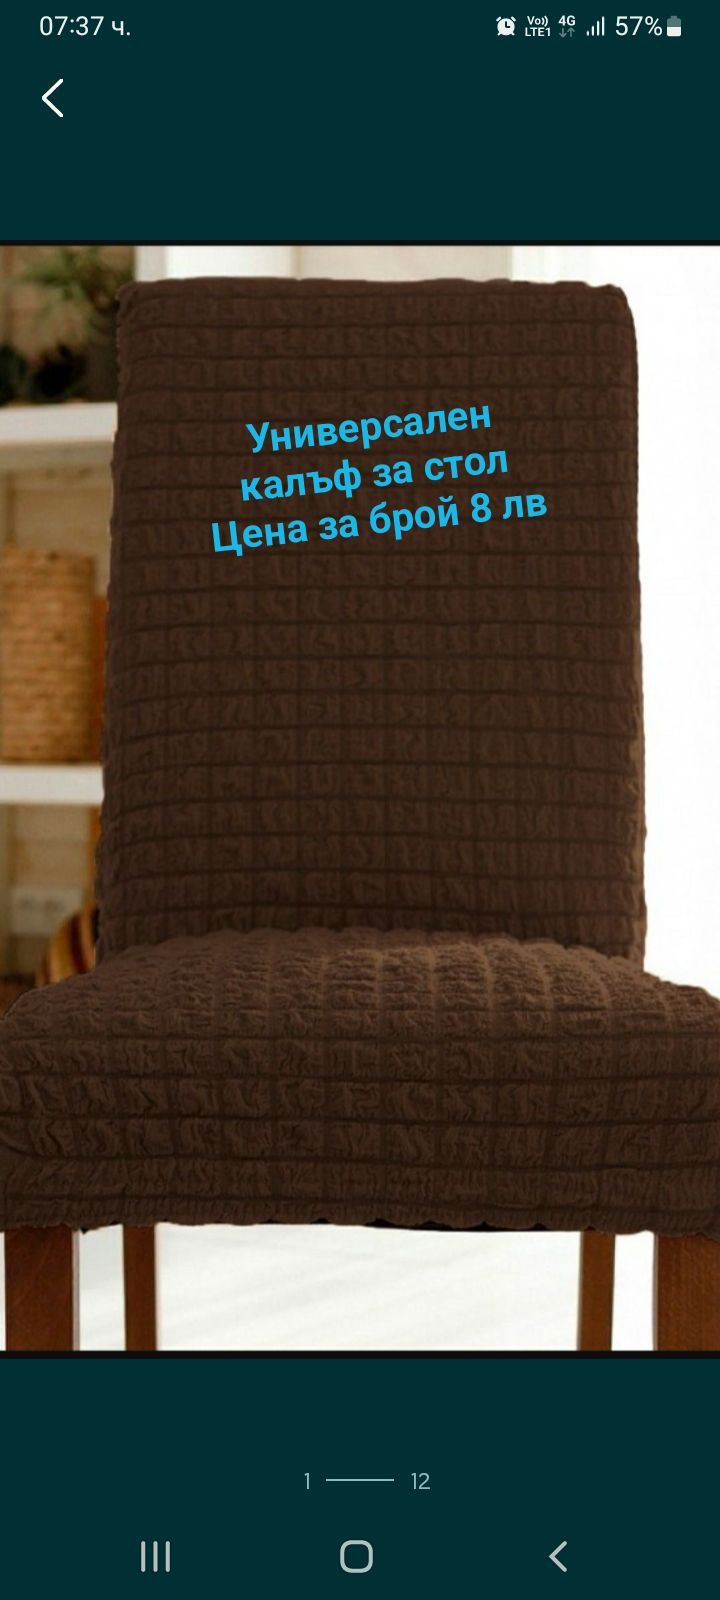 Универсален калъф за стол - нов модел